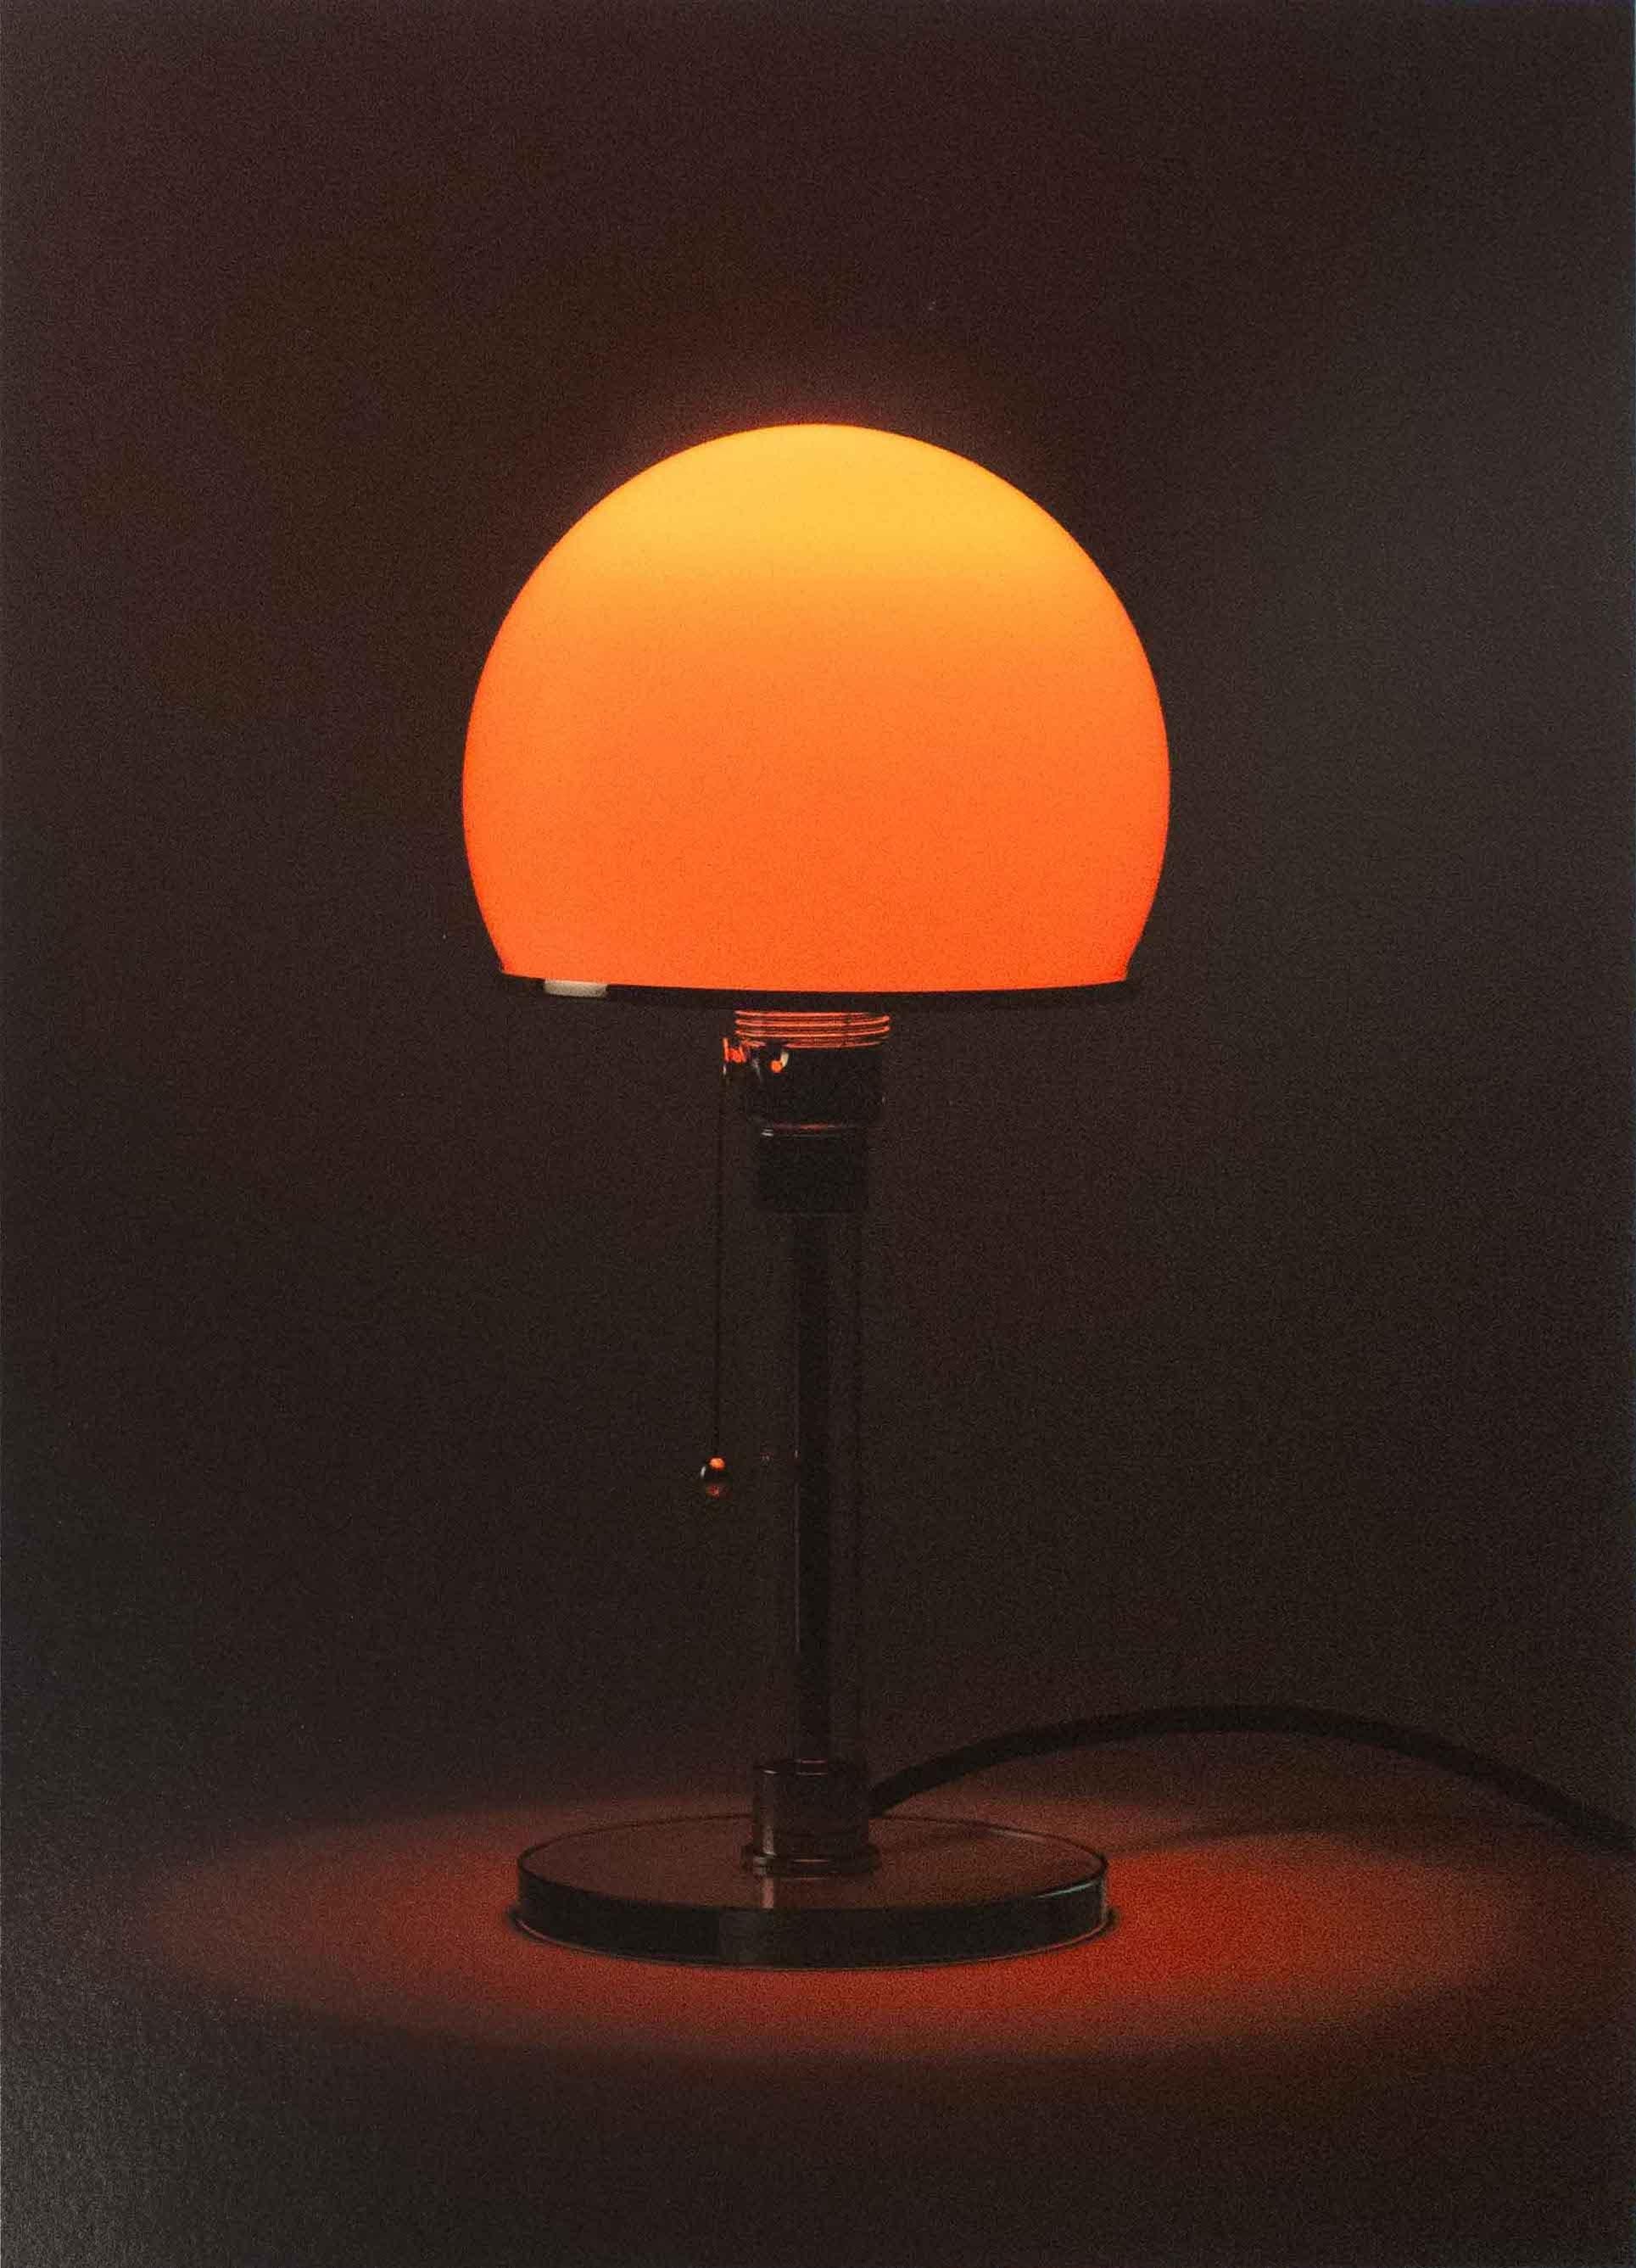 Wagenfeld Sunsets I-VI, 376 B3, 2019, Lampada, Bauhaus - Minimalist Photograph by Jonathan Monk